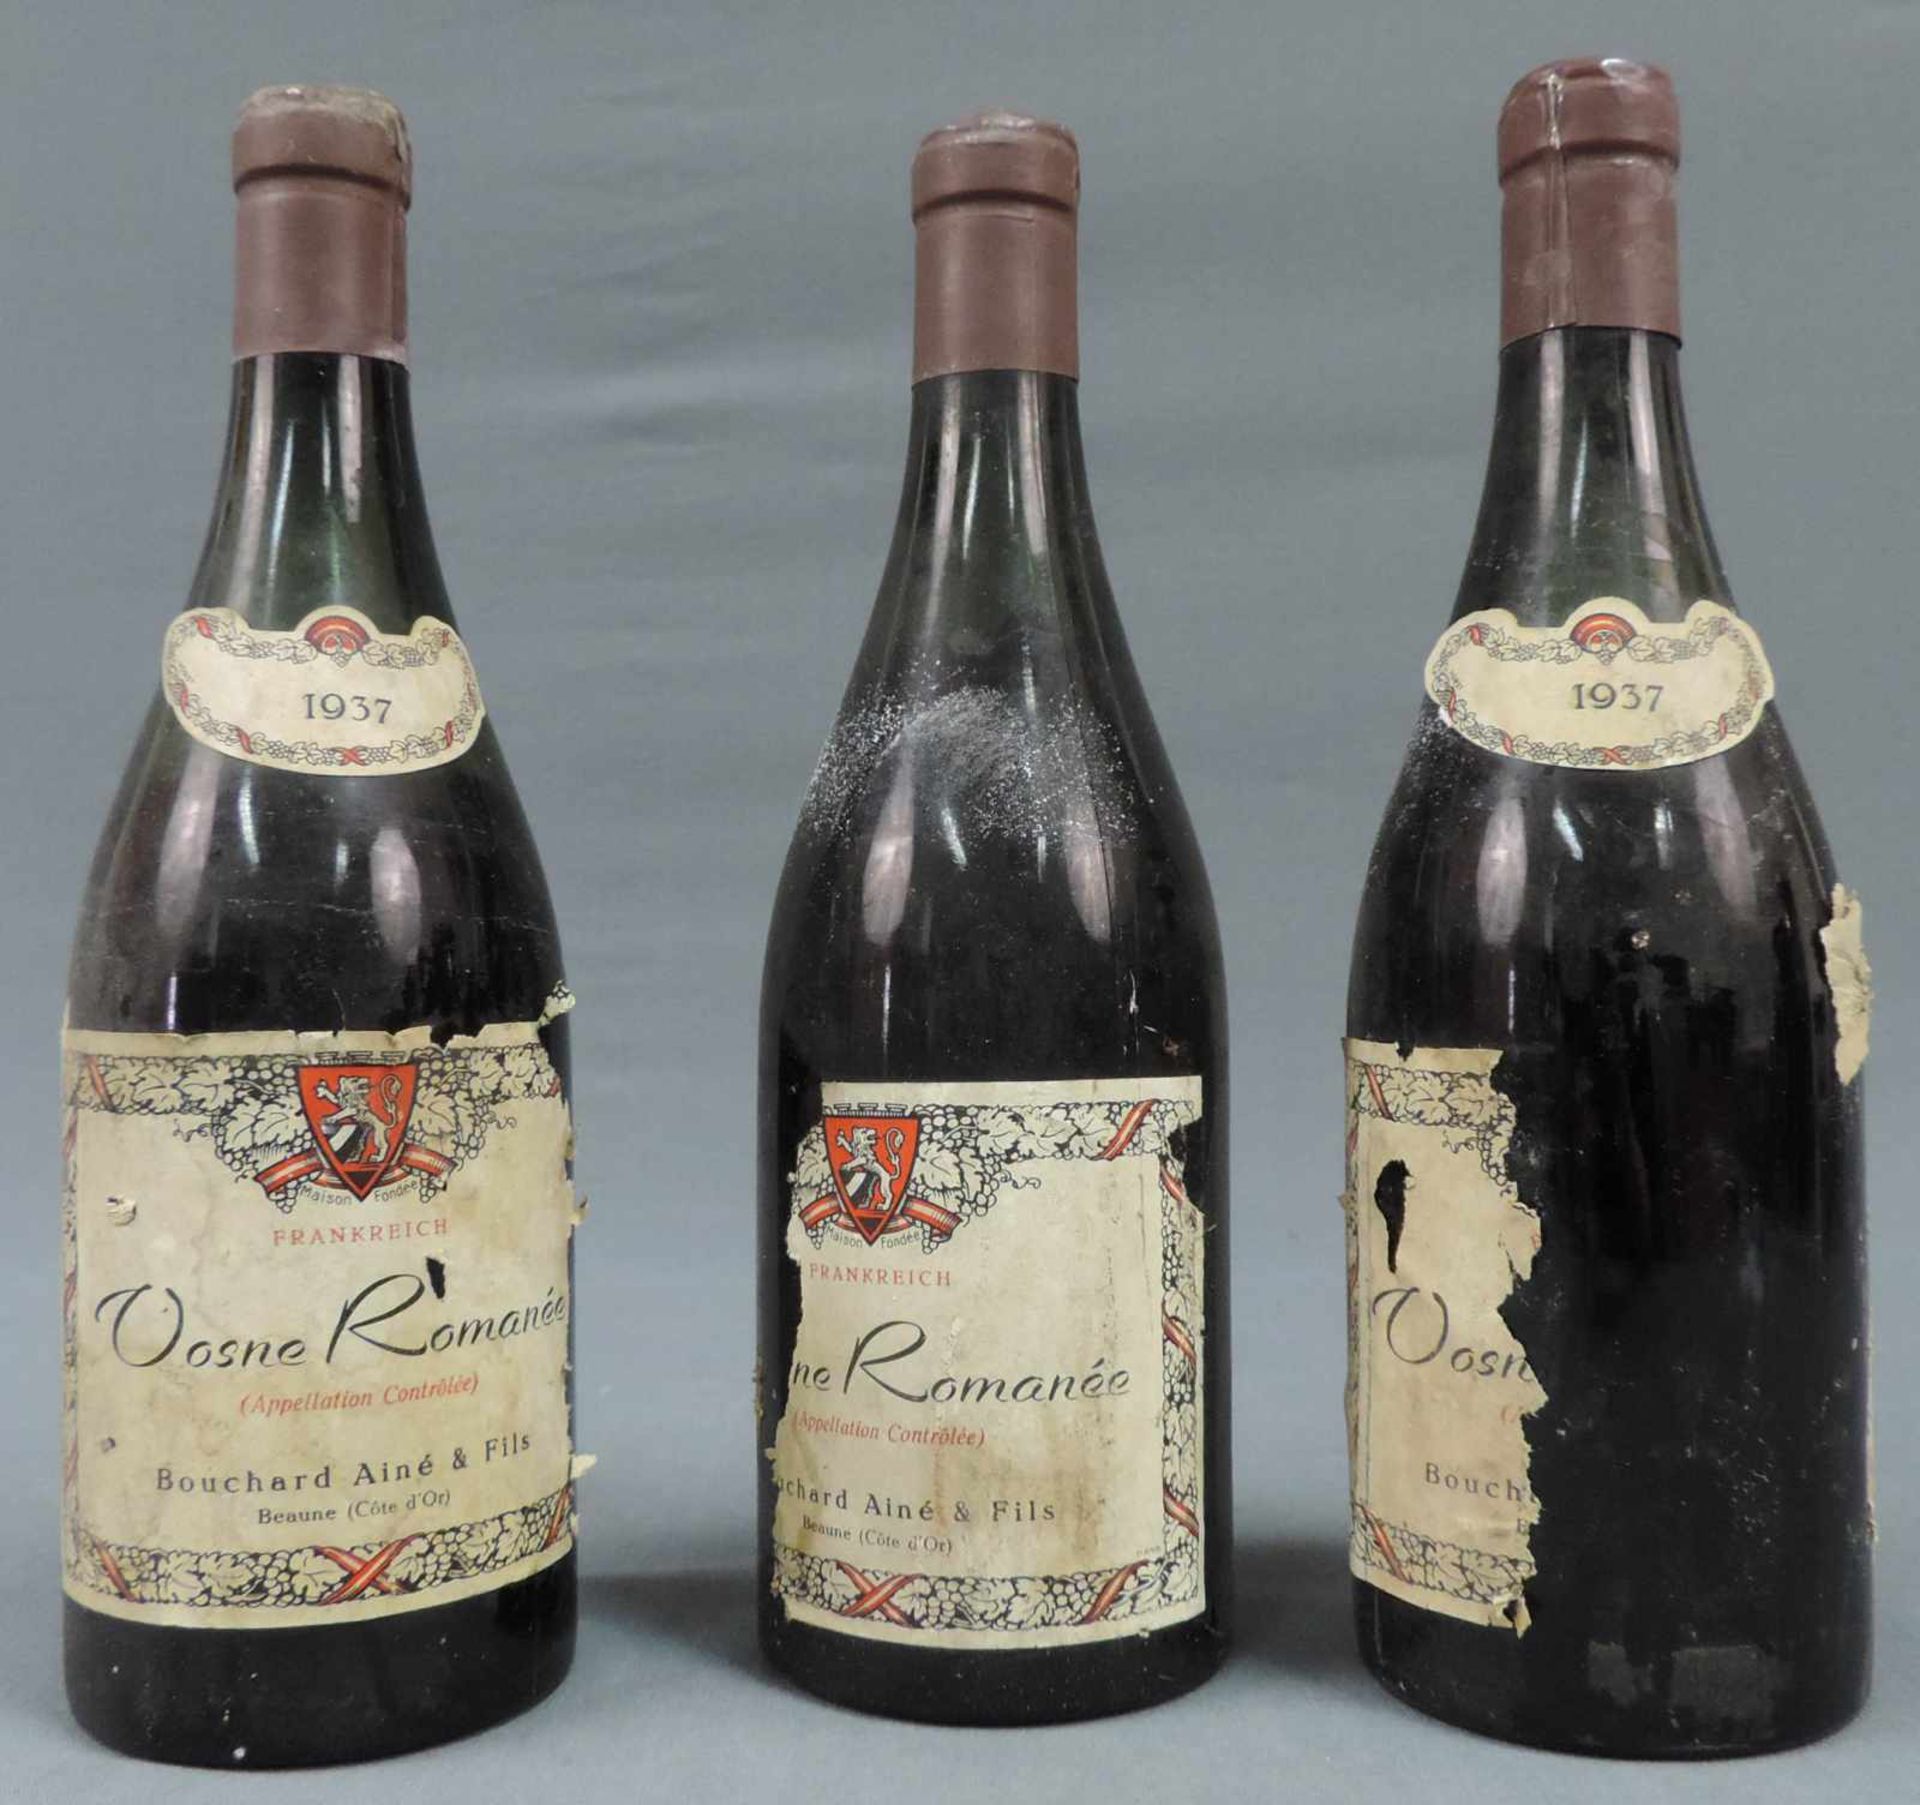 1937 Vosne Romanée AC Bouchard Ainé Fils. Beaune (Cote d'Or). 3 ganze Flaschen. Rotwein. Frankreich.